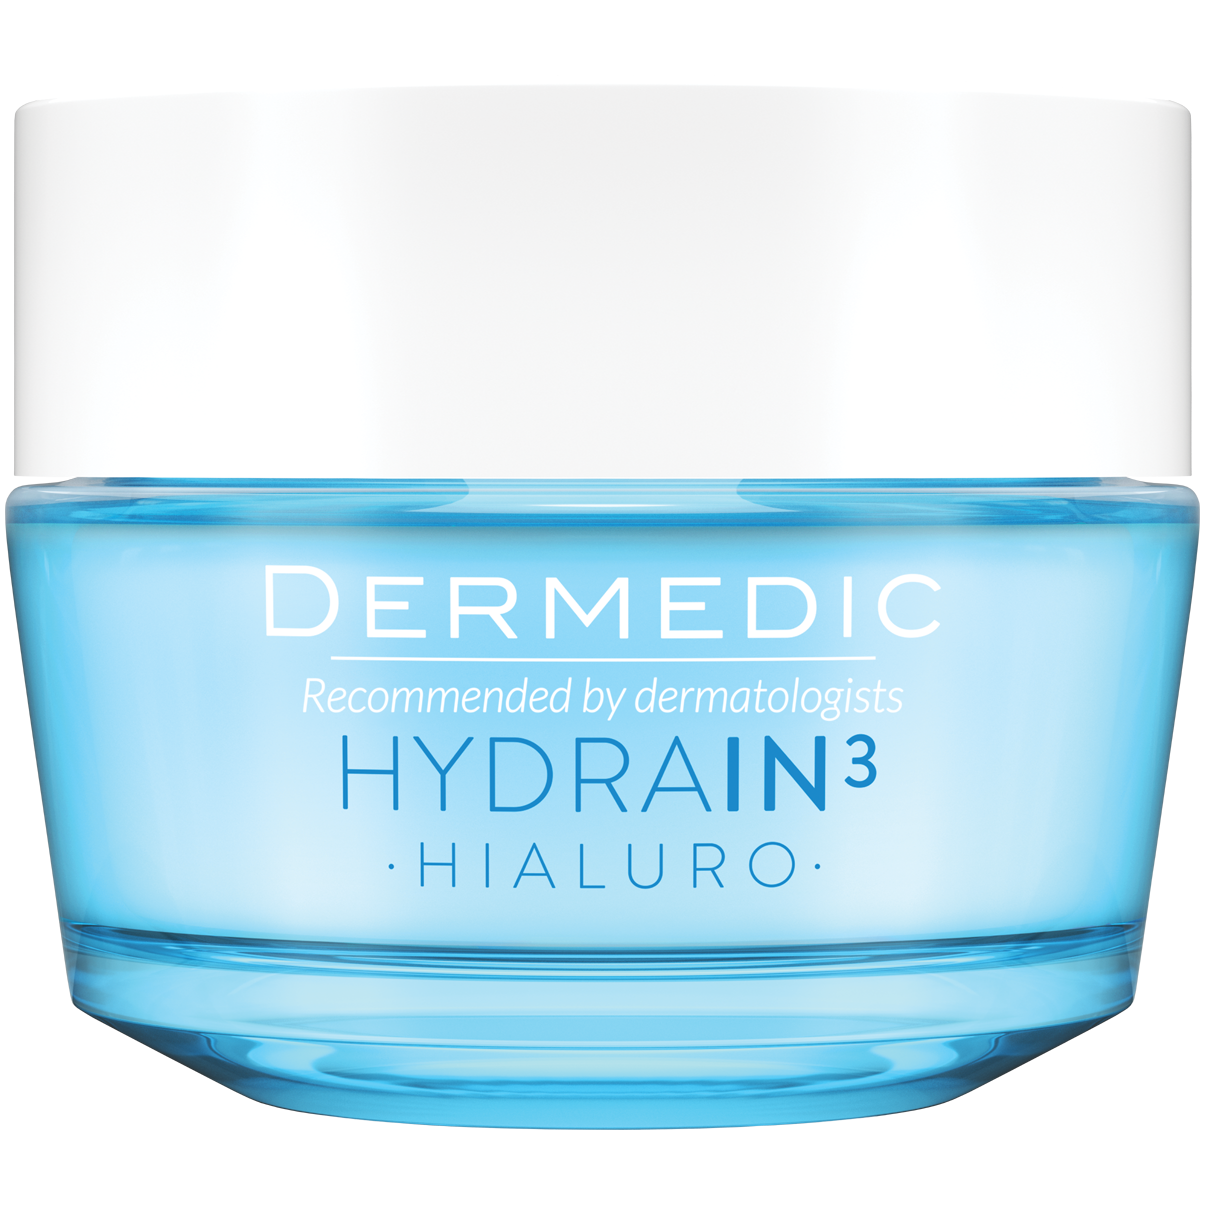 Dermedic Hydrain3 Hialuro ультраувлажняющий крем-гель для лица, 50 г dermedic hydrain3 hialuro крем гель ультра увлажняющий 50 гр